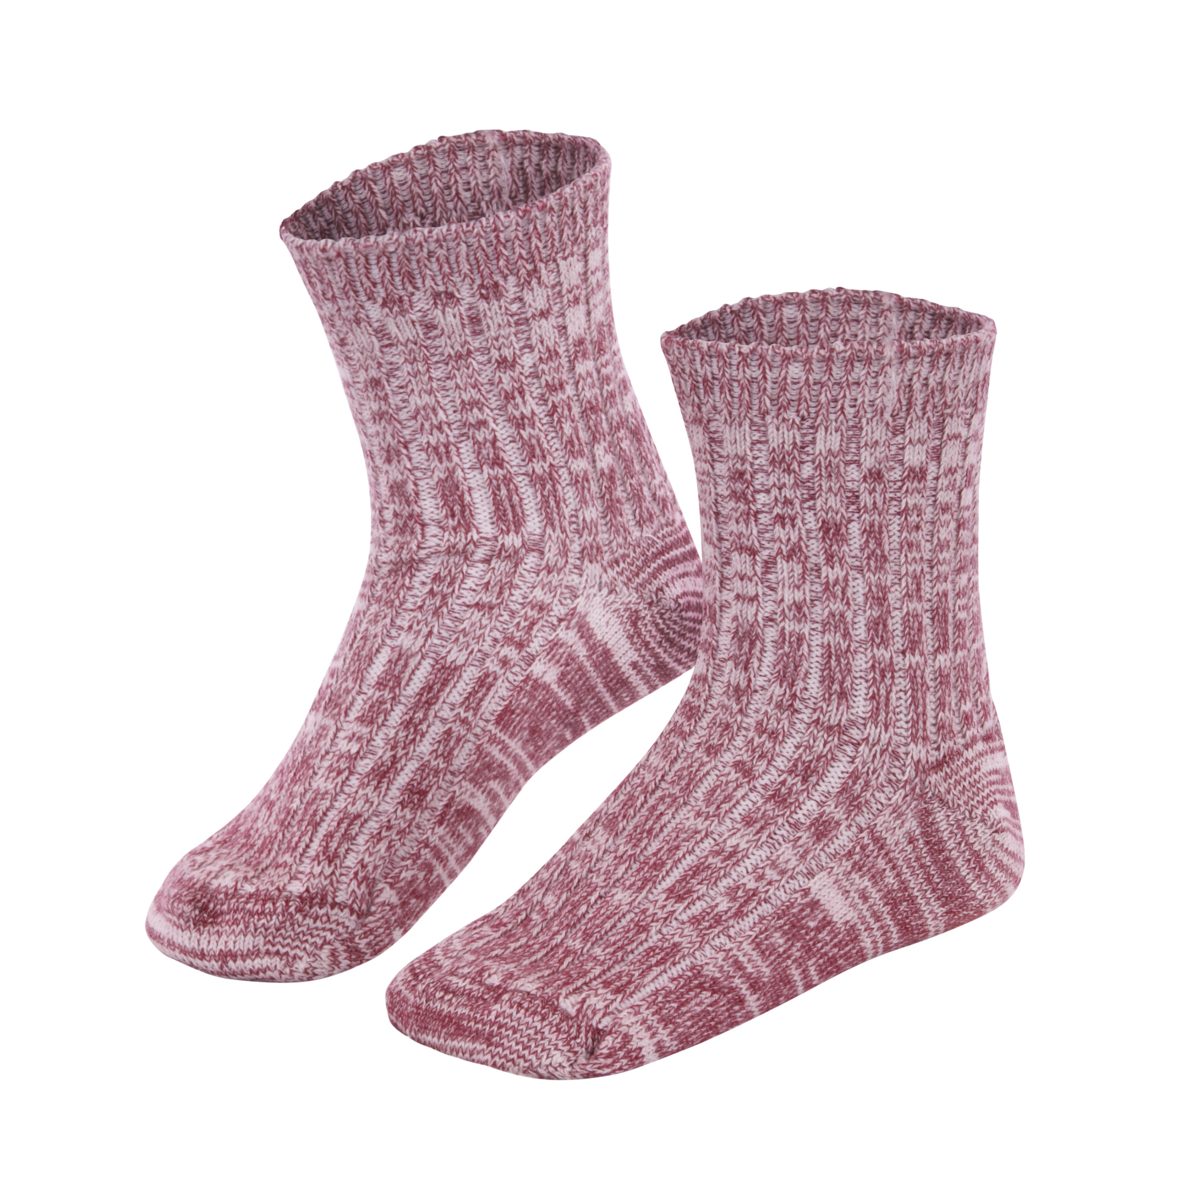 LIVING CRAFTS Norwegersocken Warme Socken für aktive Kids Bordeaux Mouliné